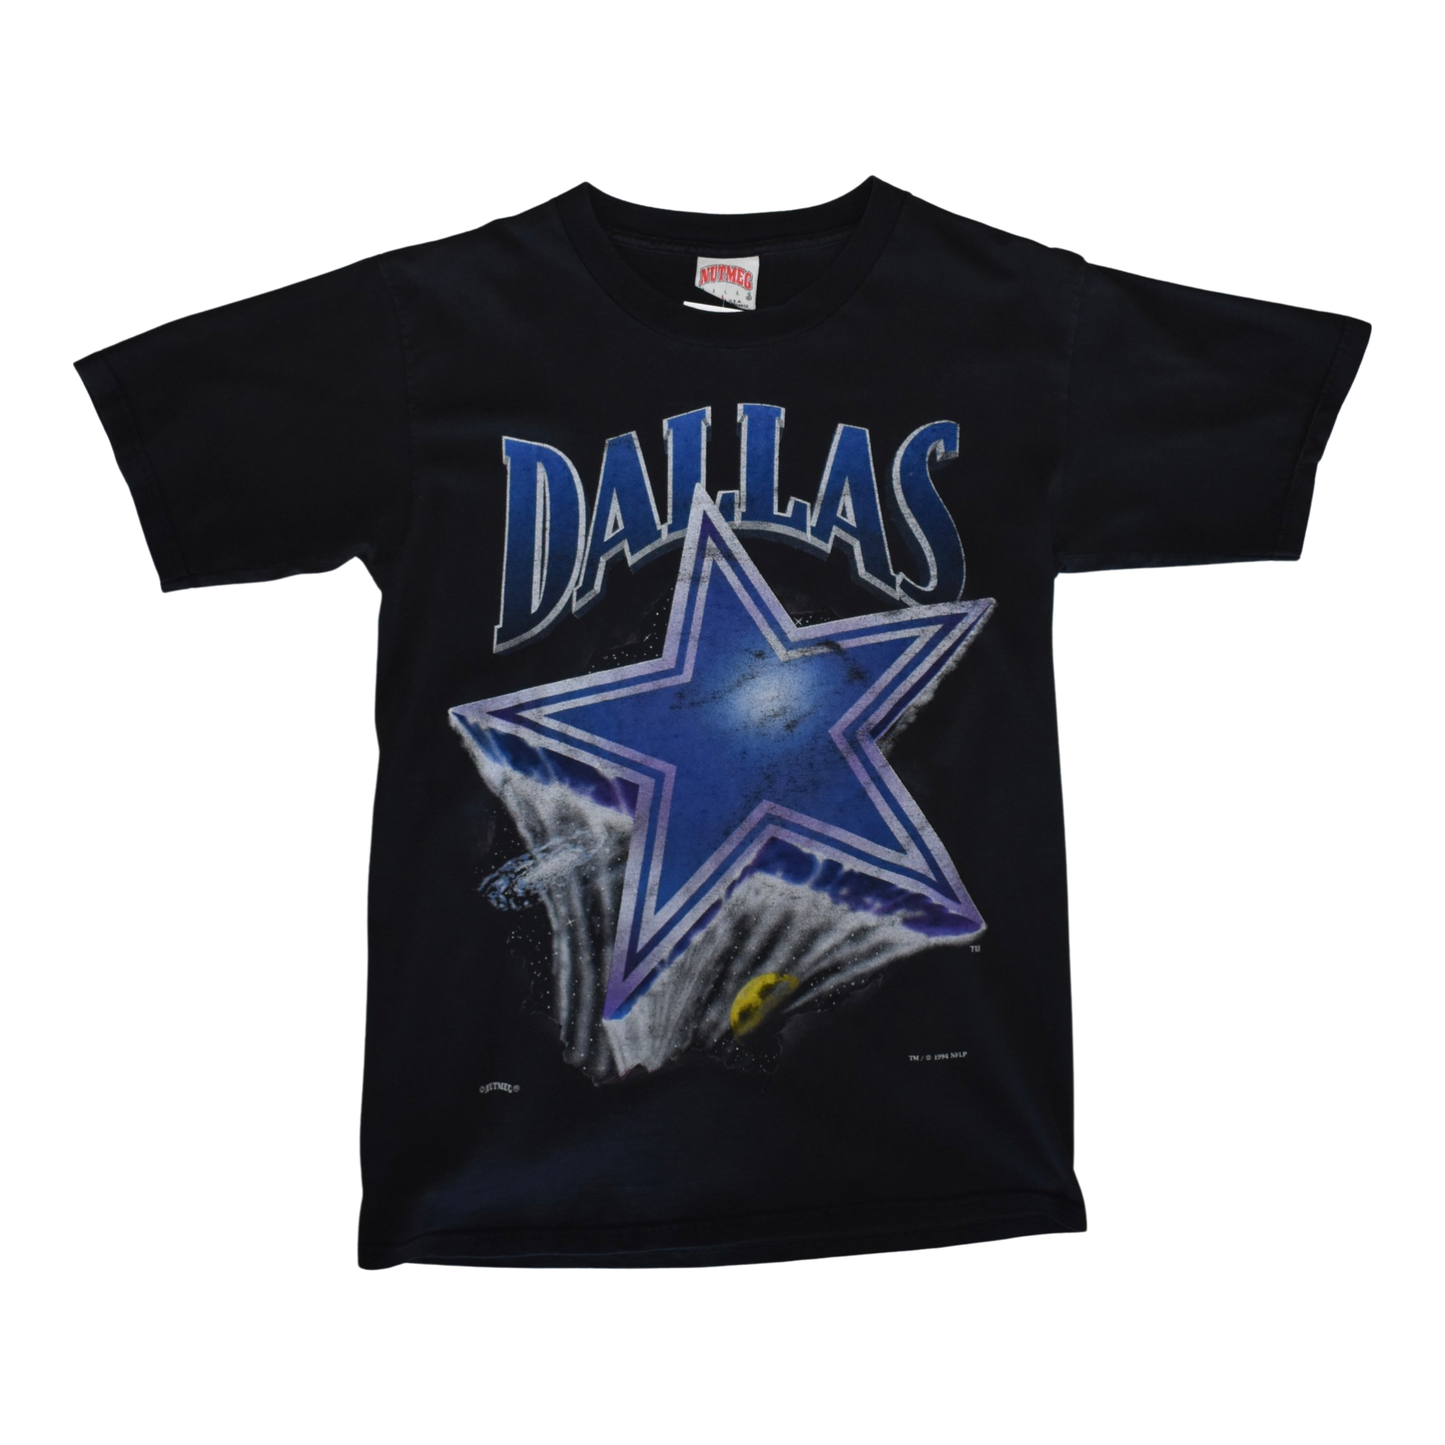 Vintage 1994 Dallas Cowboys Tee LRG